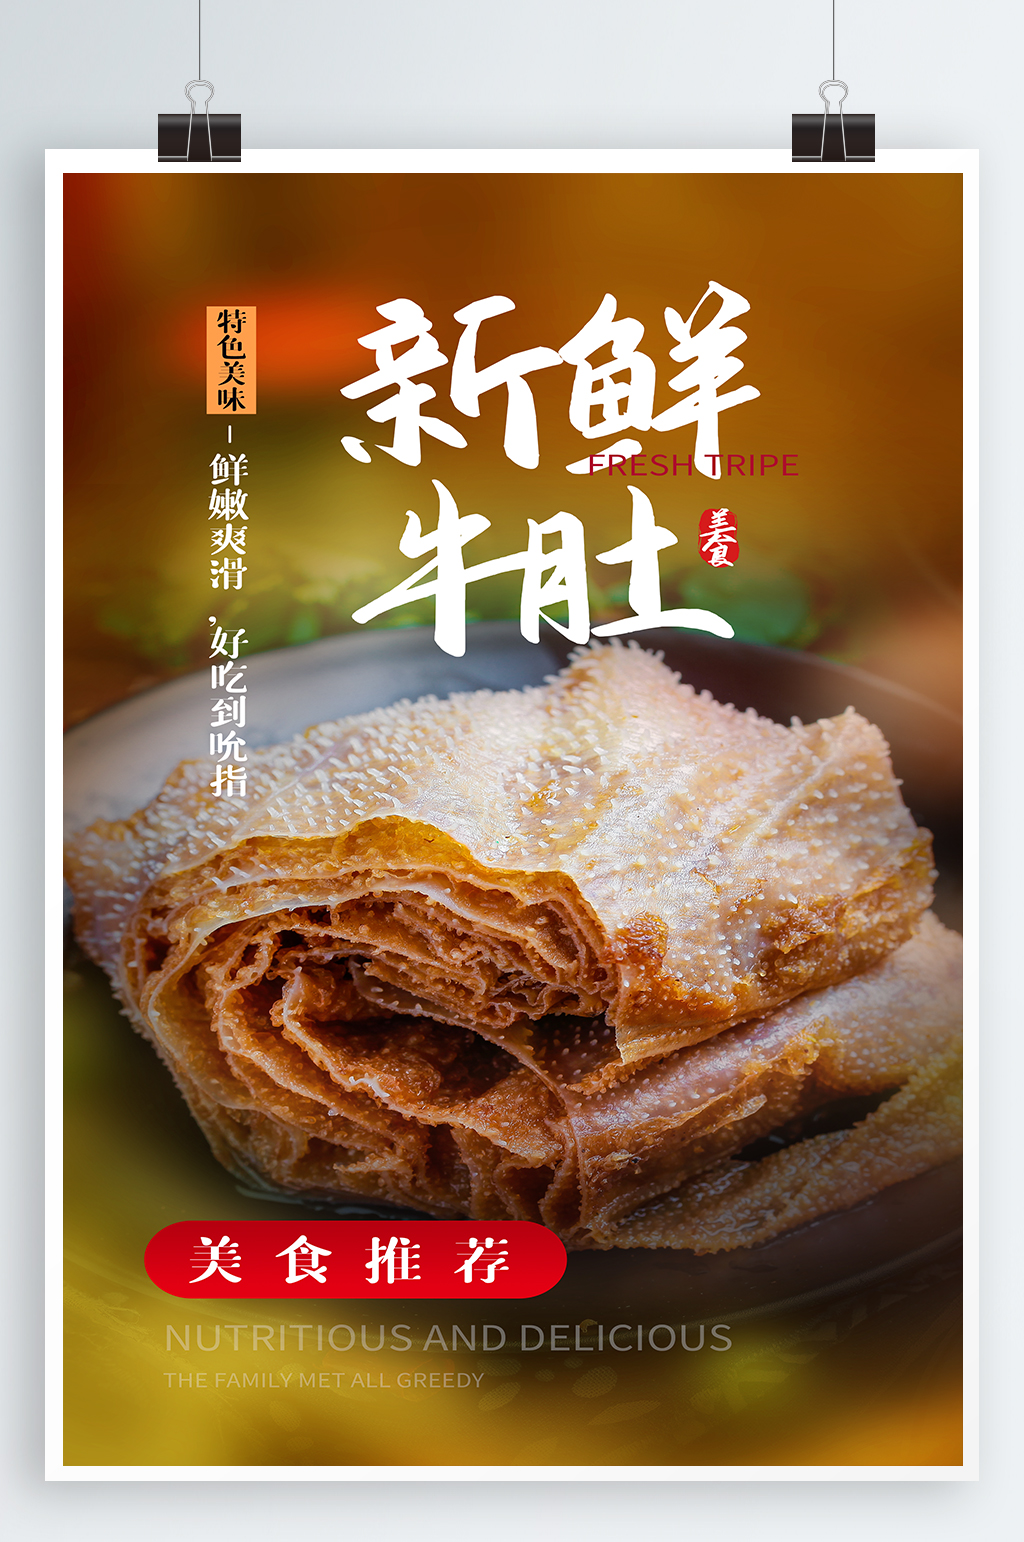 牛肚美食宣传海报素材免费下载,本作品是由紫妍上传的原创平面广告